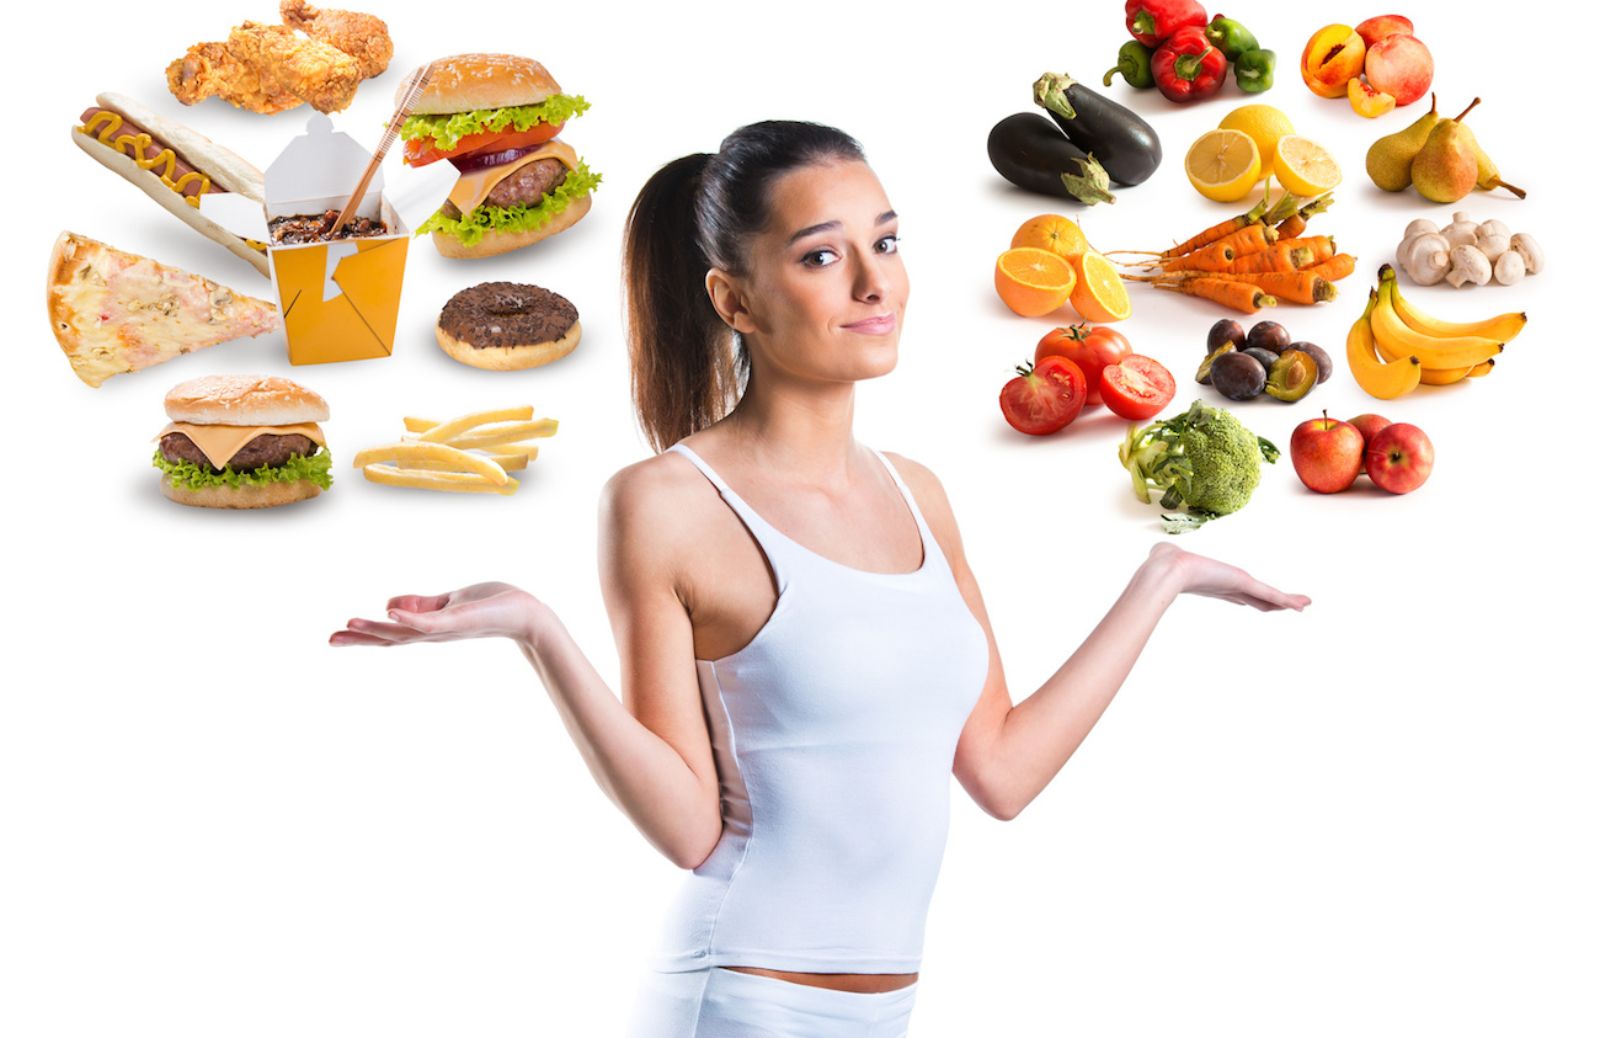 Come ridurre i grassi saturi e i grassi trans nell'alimentazione